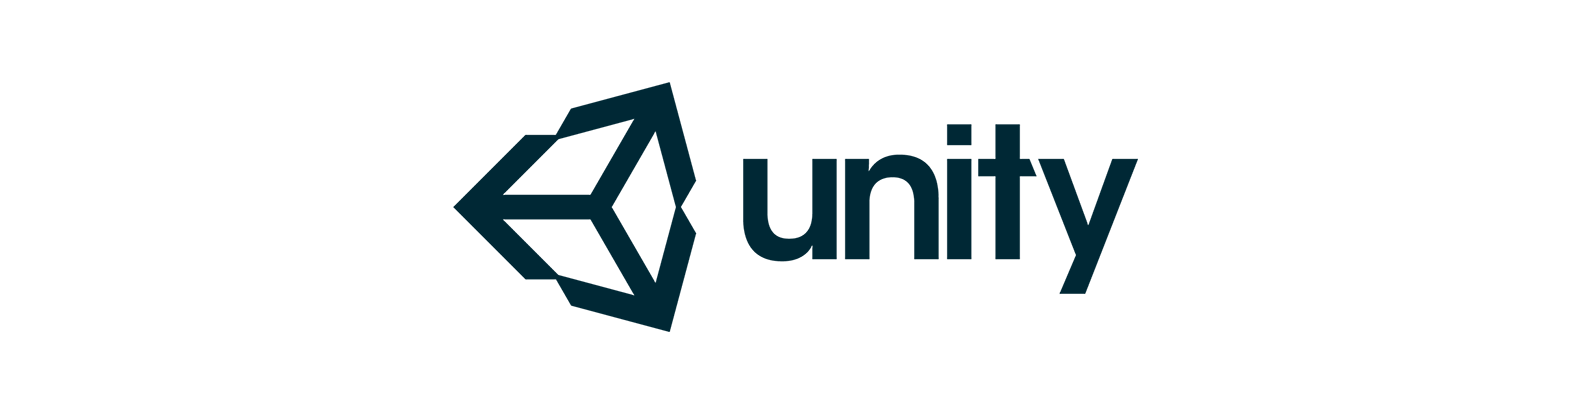 unity-logo-rgb_resized